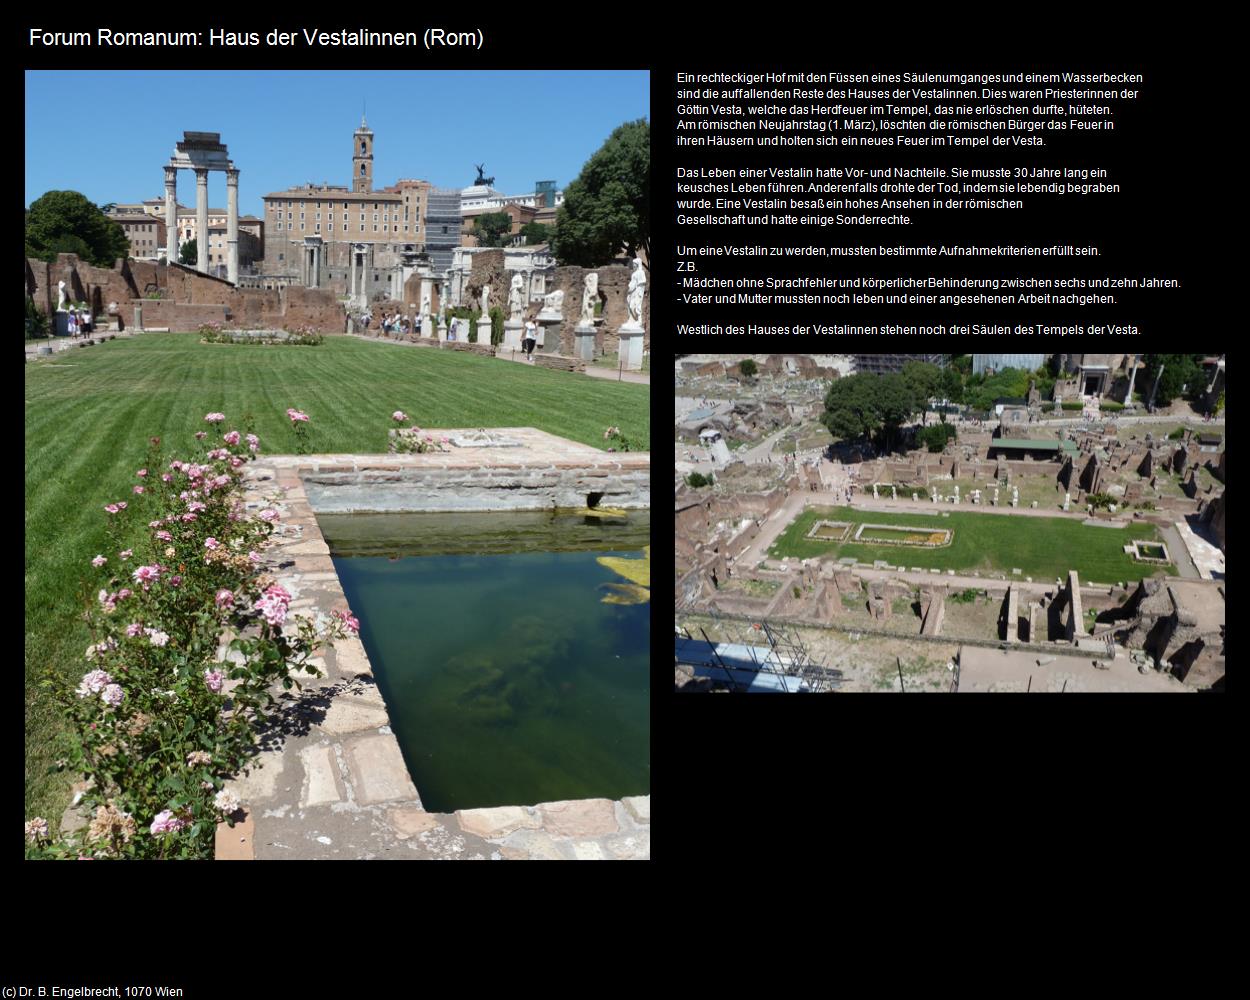 Forum Romanum: Haus der Vestalinnen (Rom-04-Forum Romanum und Umgebung) in ROM